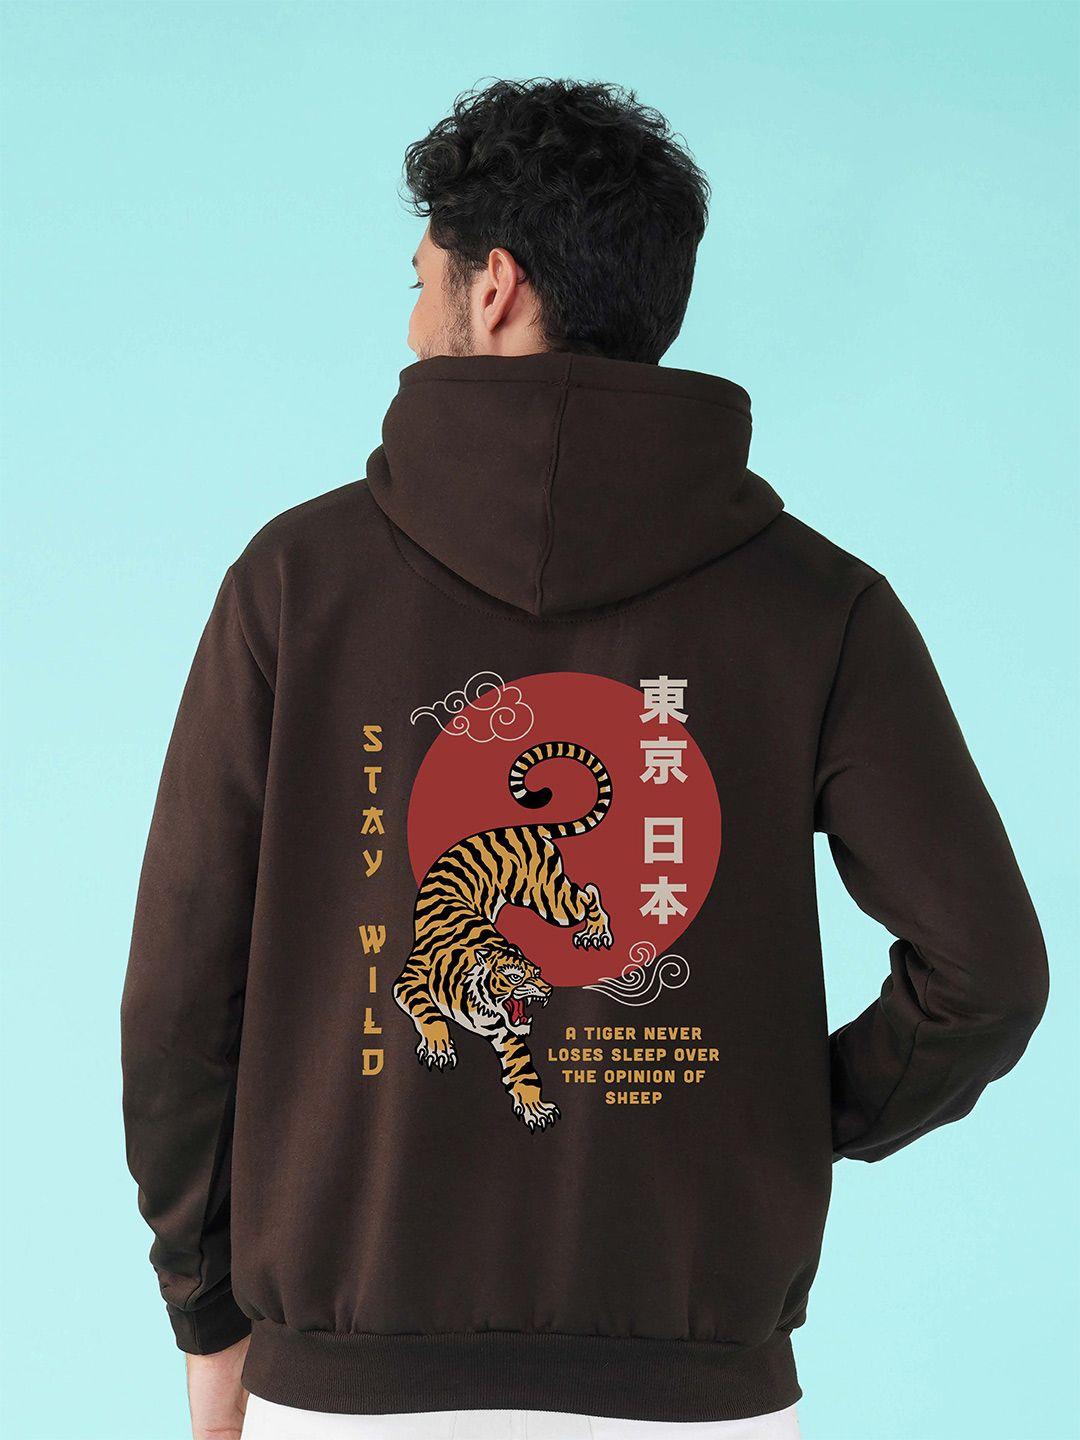 nusyl-graphic-printed-hooded-fleece-sweatshirt